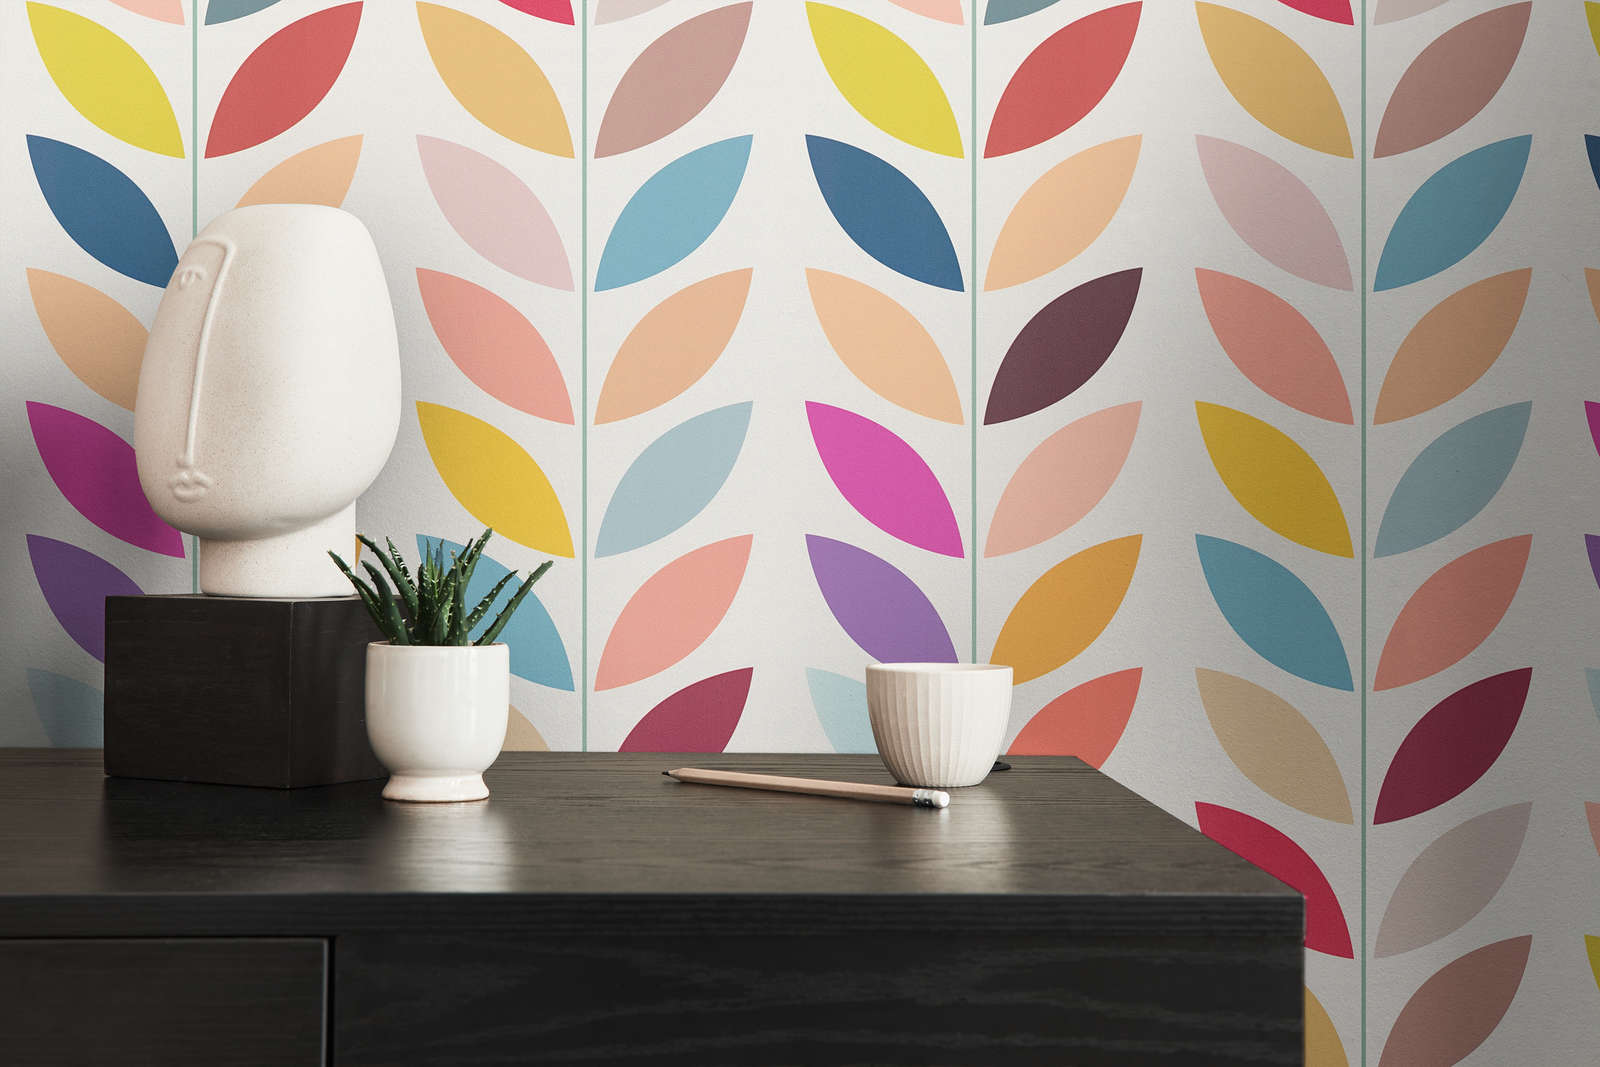             Retro non-woven wallpaper with striking colourful leaf pattern - cream, multicoloured
        